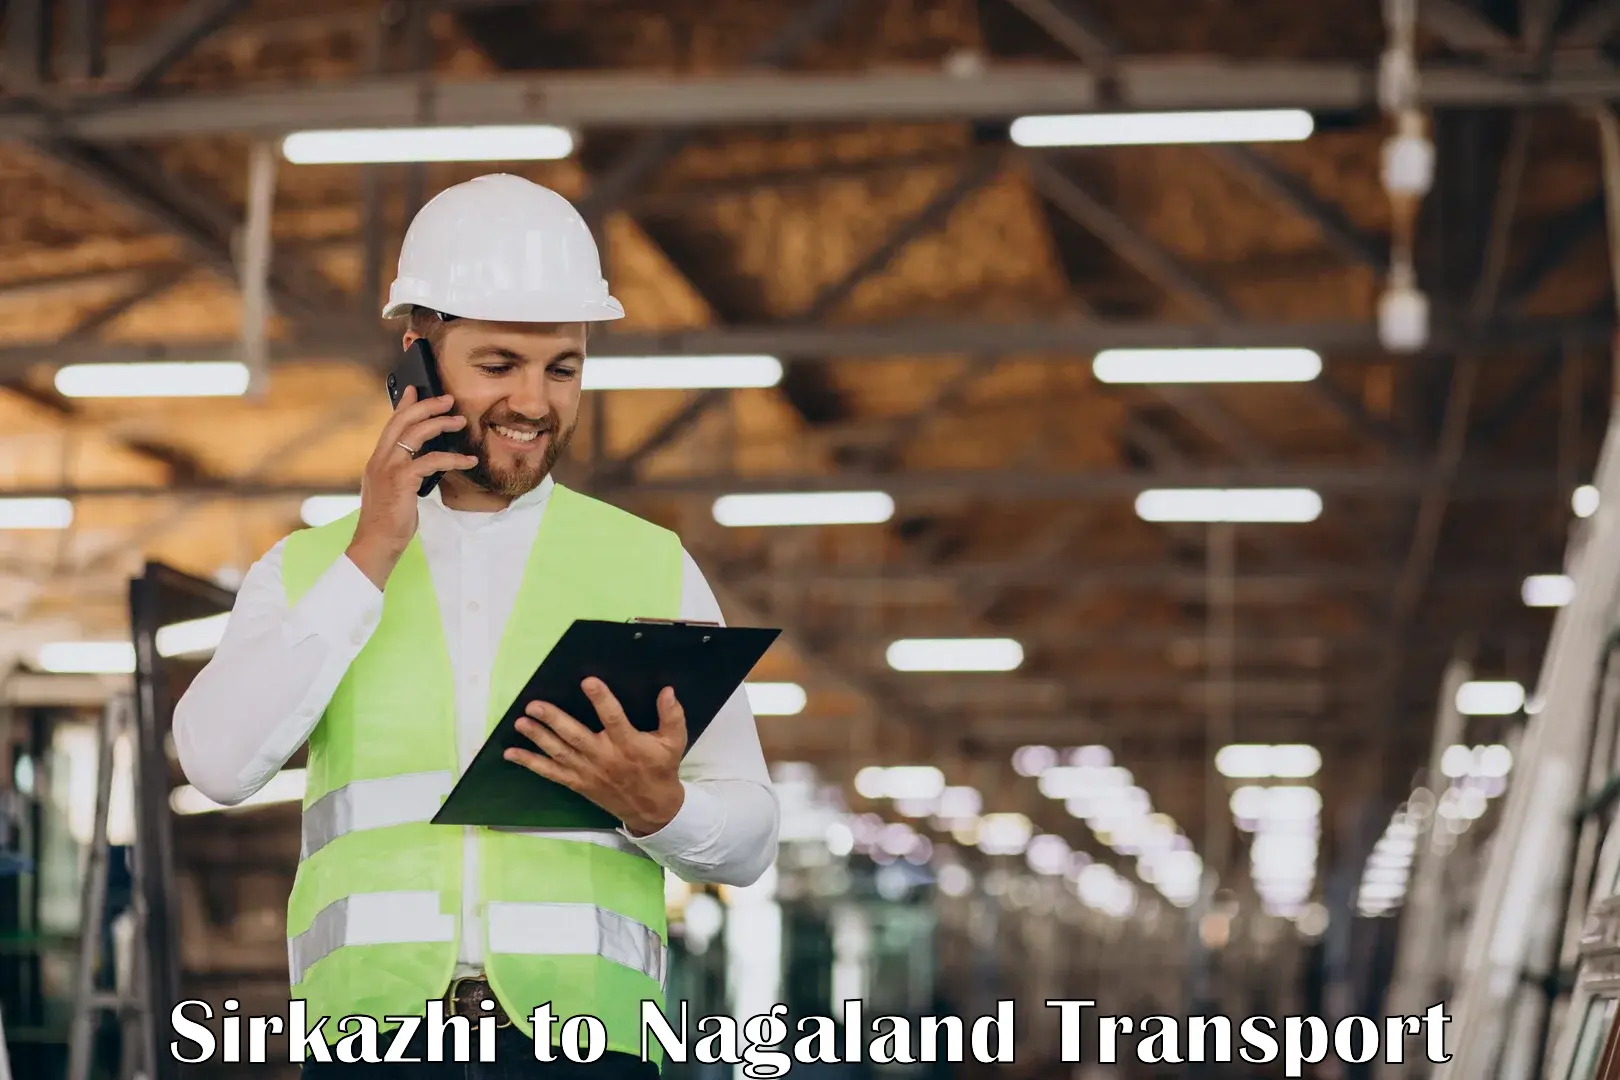 Commercial transport service Sirkazhi to Nagaland